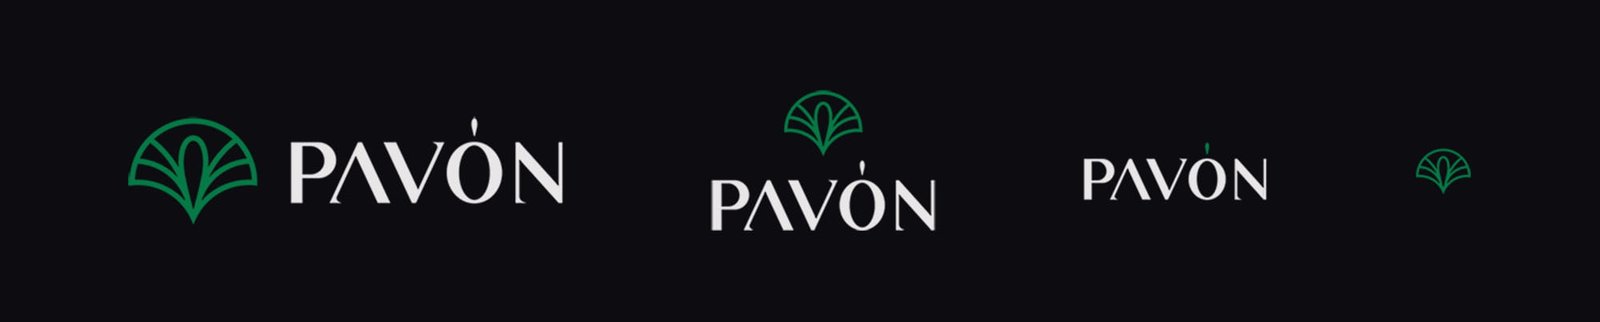 pavon watches logo variations